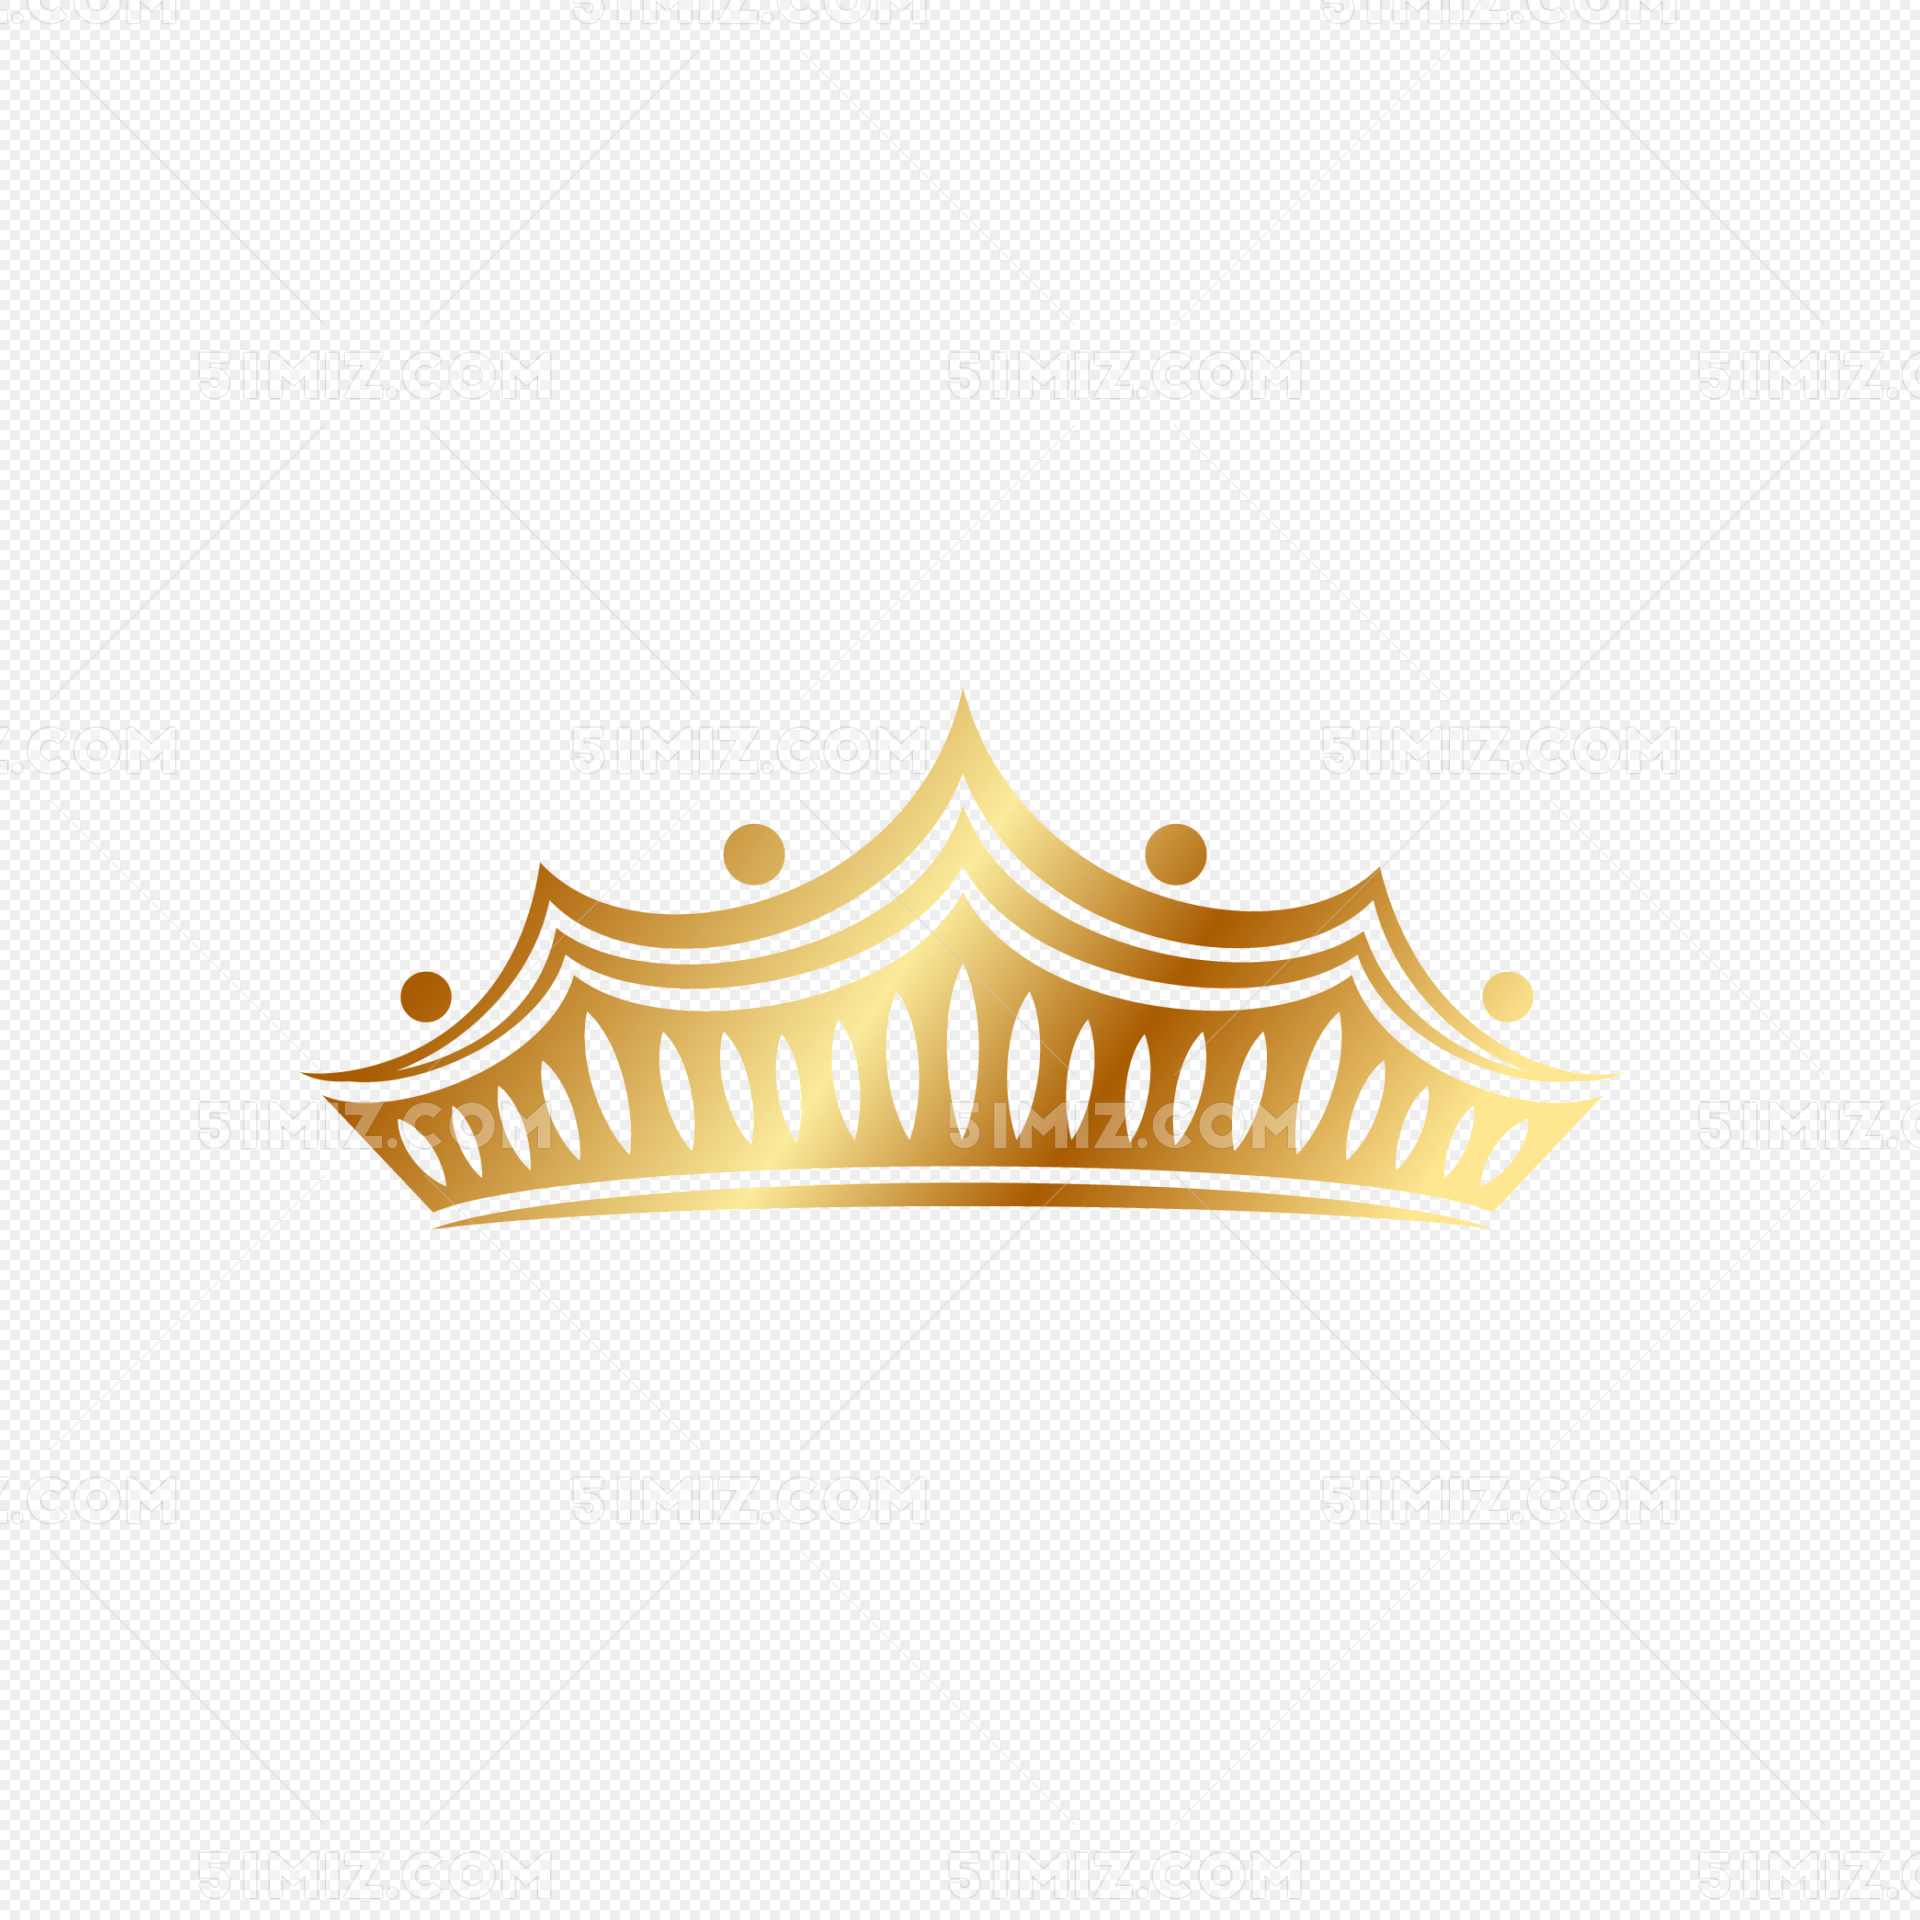 皇冠图标图片素材免费下载 - 觅知网